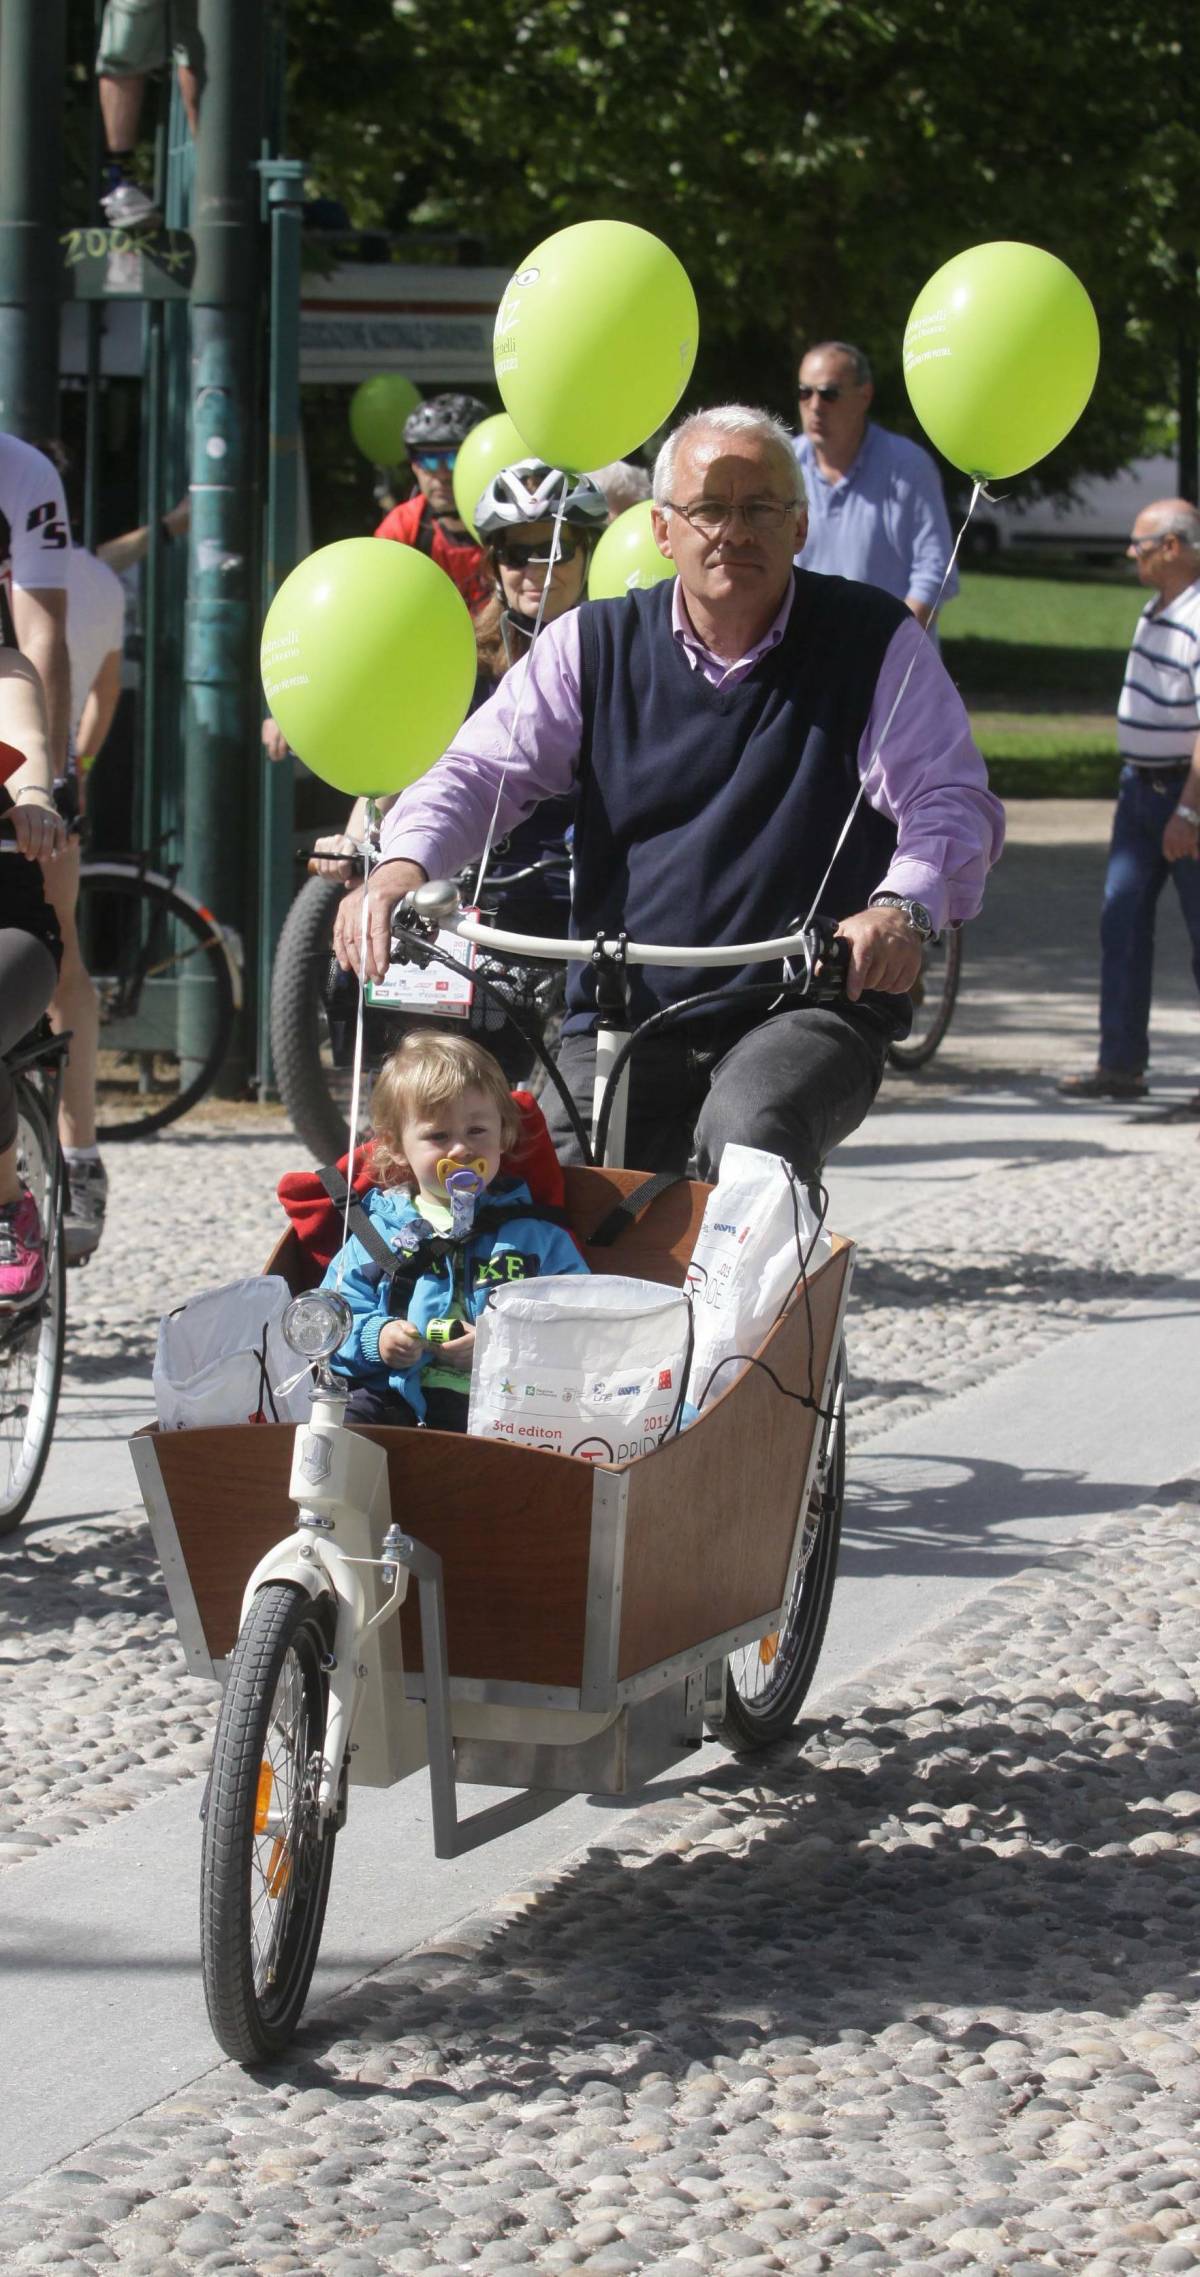 Cyclopride, in migliaia pedalano in una città senza auto